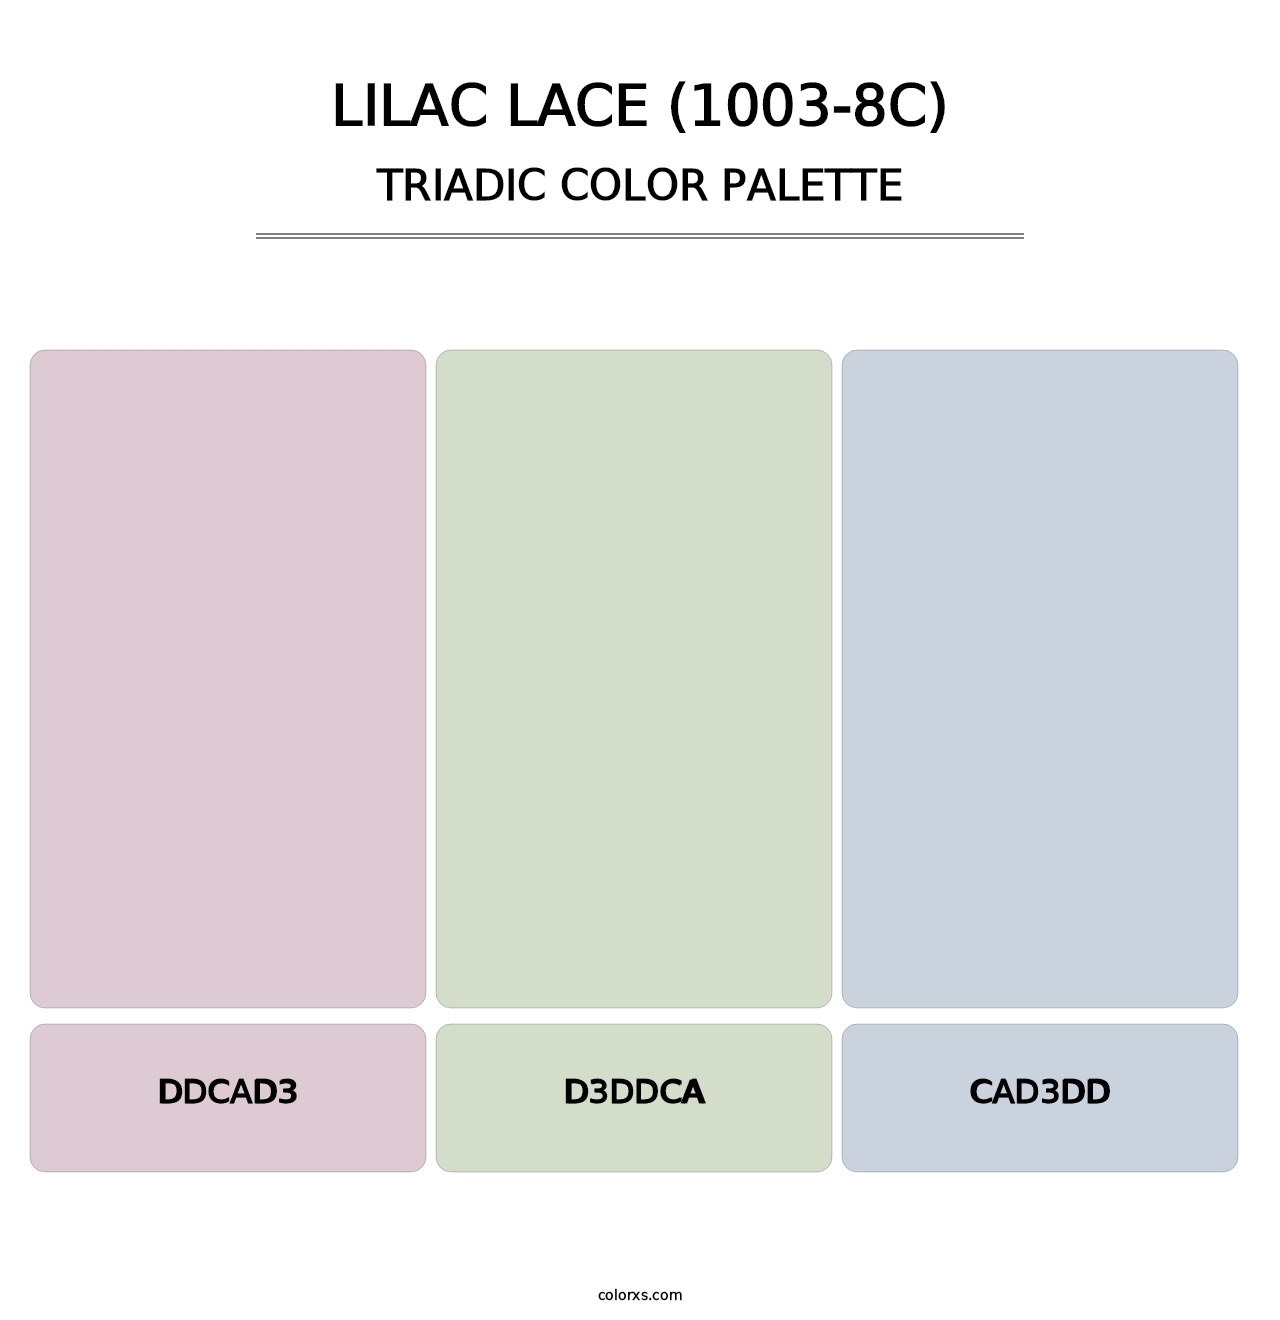 Lilac Lace (1003-8C) - Triadic Color Palette